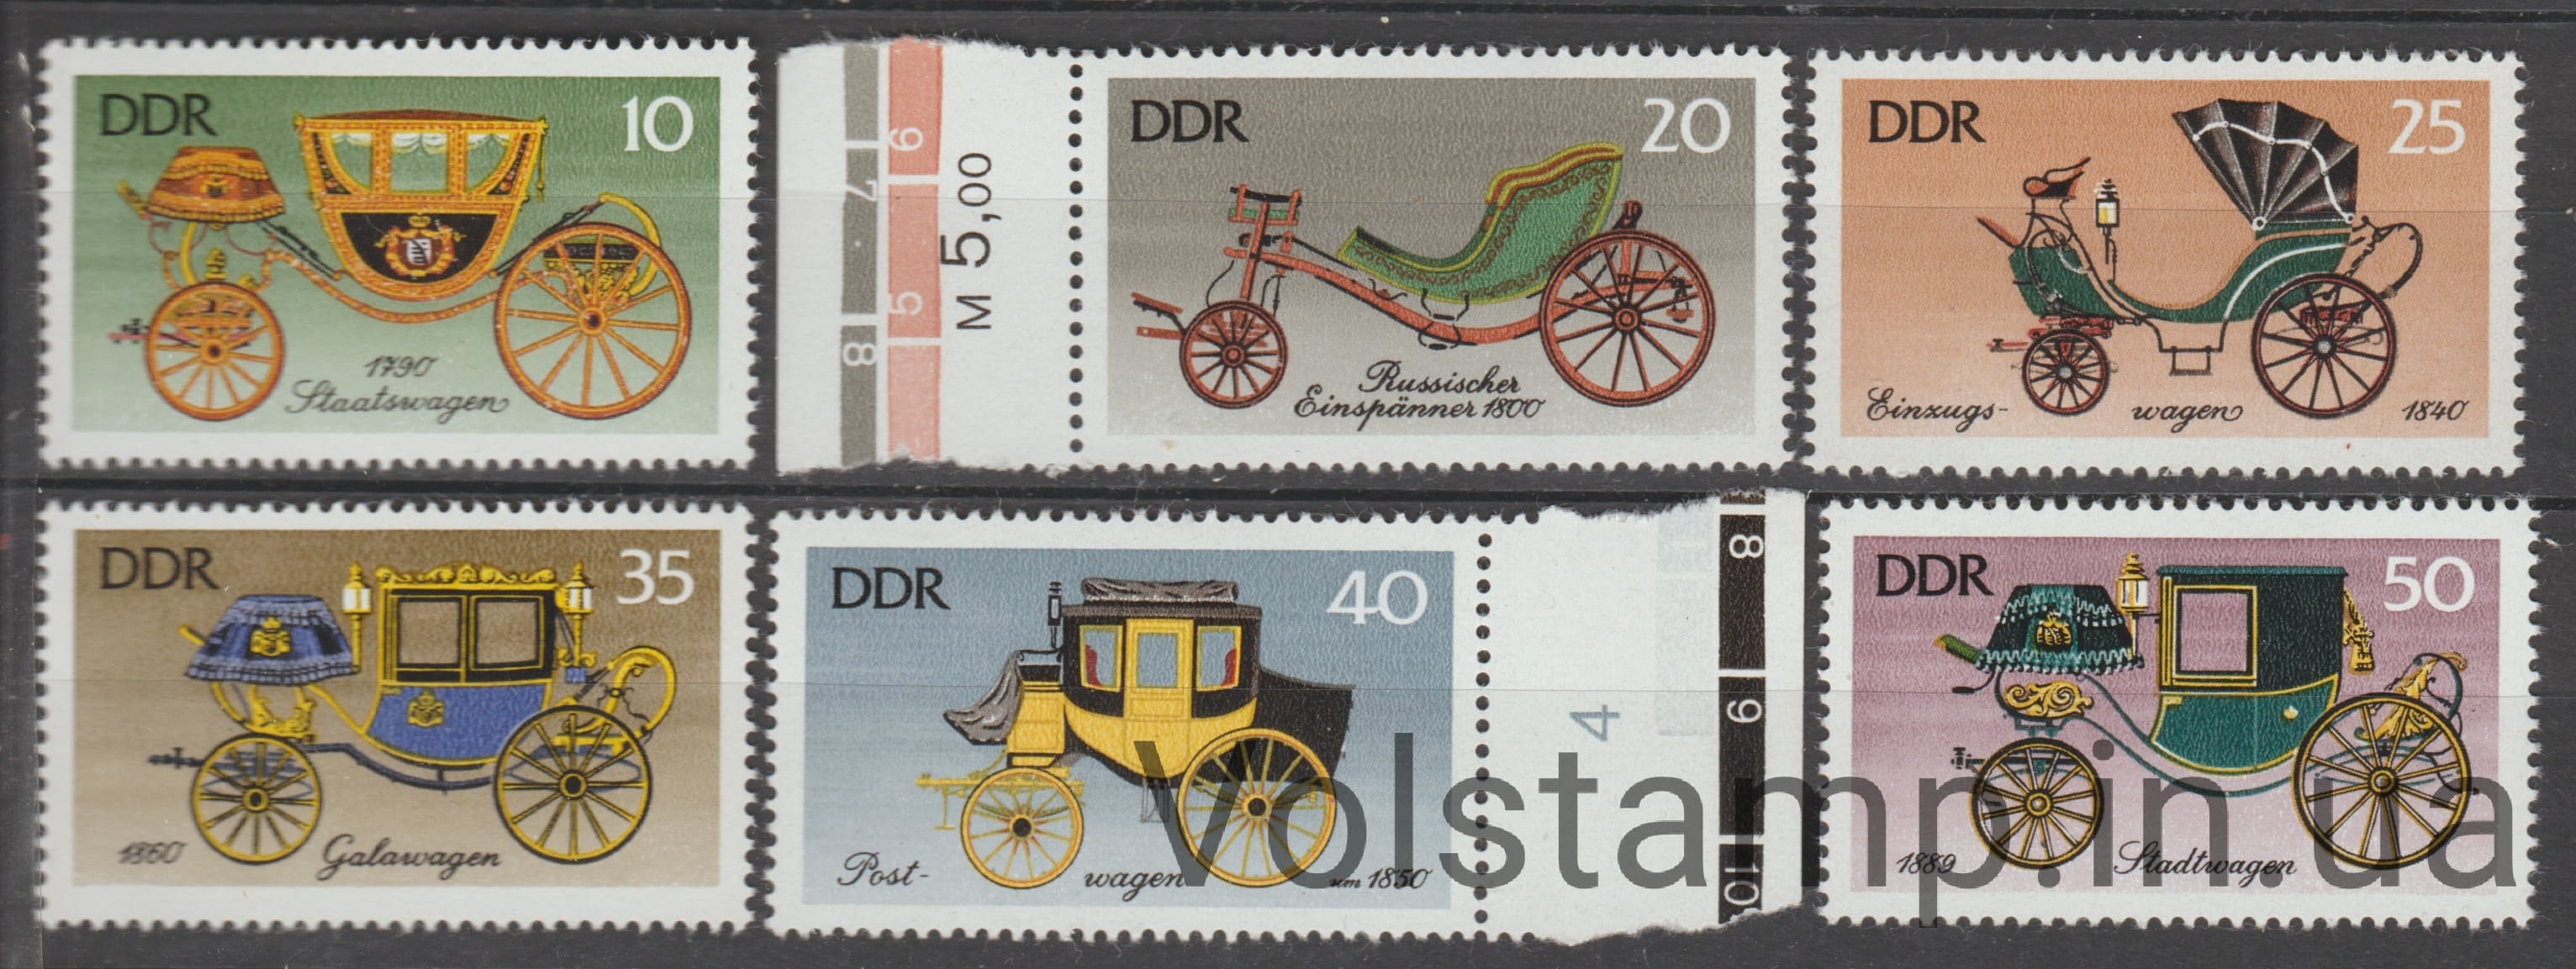 1976 ГДР Серия марок (Государственная карета (ок. 1790 г.)) MNH №2147-2152